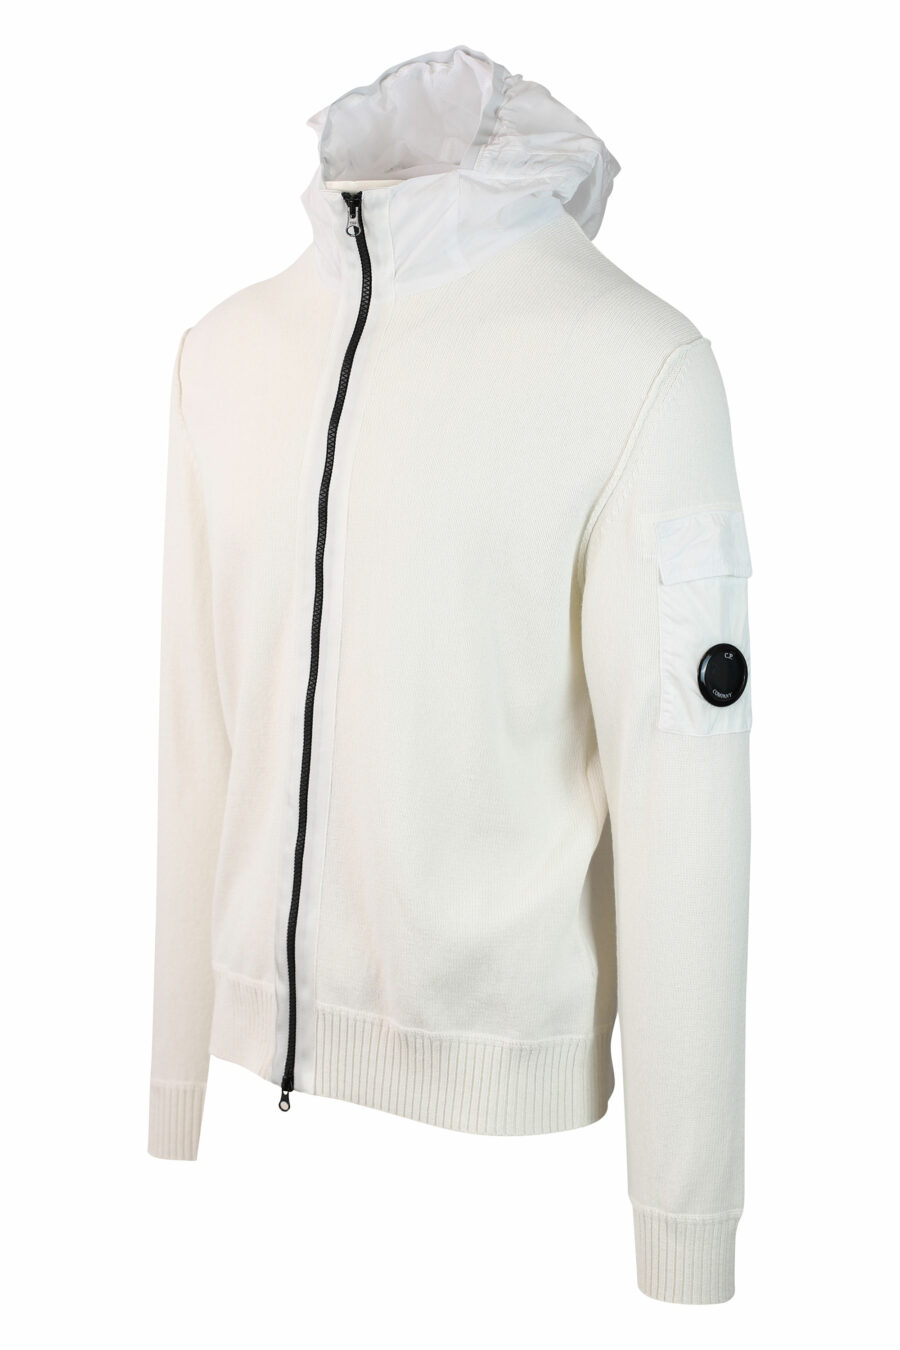 Sweat blanc avec capuche zippée et mini logo circulaire - IMG 0129